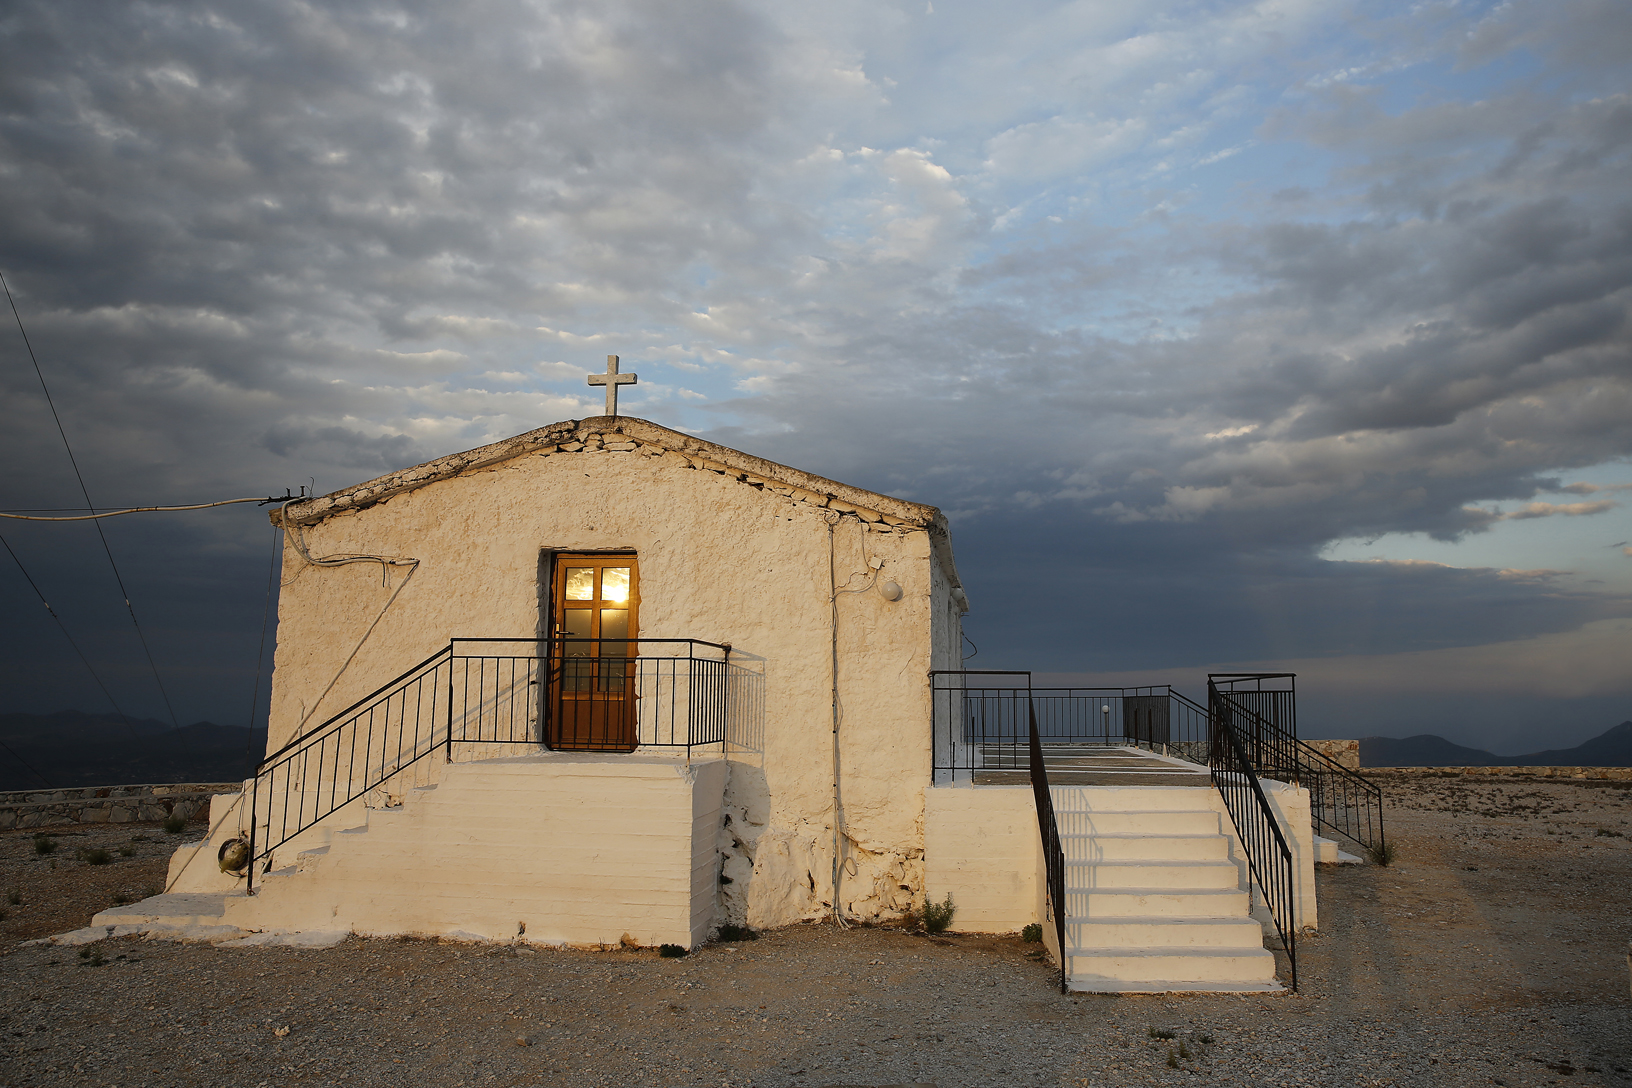 Προφήτης Ηλίας, χωριό Καλέντζι. Φωτογραφία: ©Βασίλης Συκάς, για τον Δήμο Κύμης-Αλιβερίου